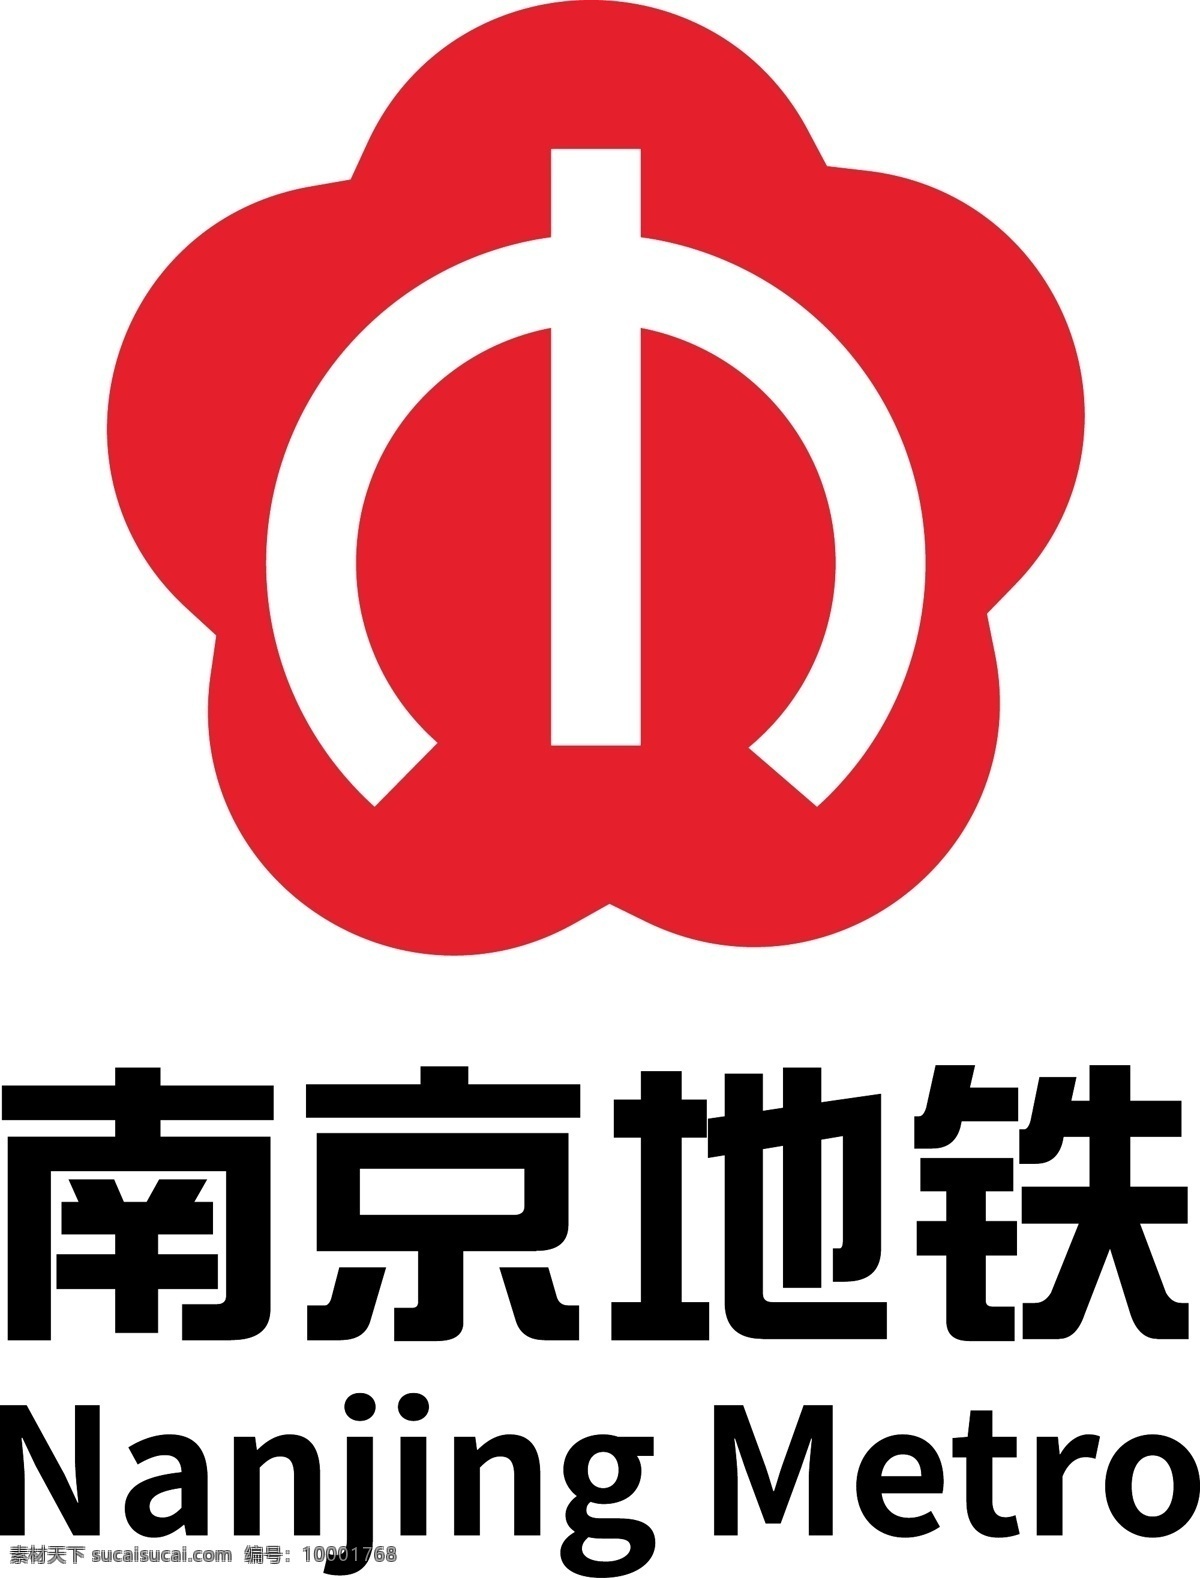 南京 地铁 logo 地铁logo 南京地铁 红色 最新 标志 企业标识 标签 logo设计 矢量图 可编辑 源文件